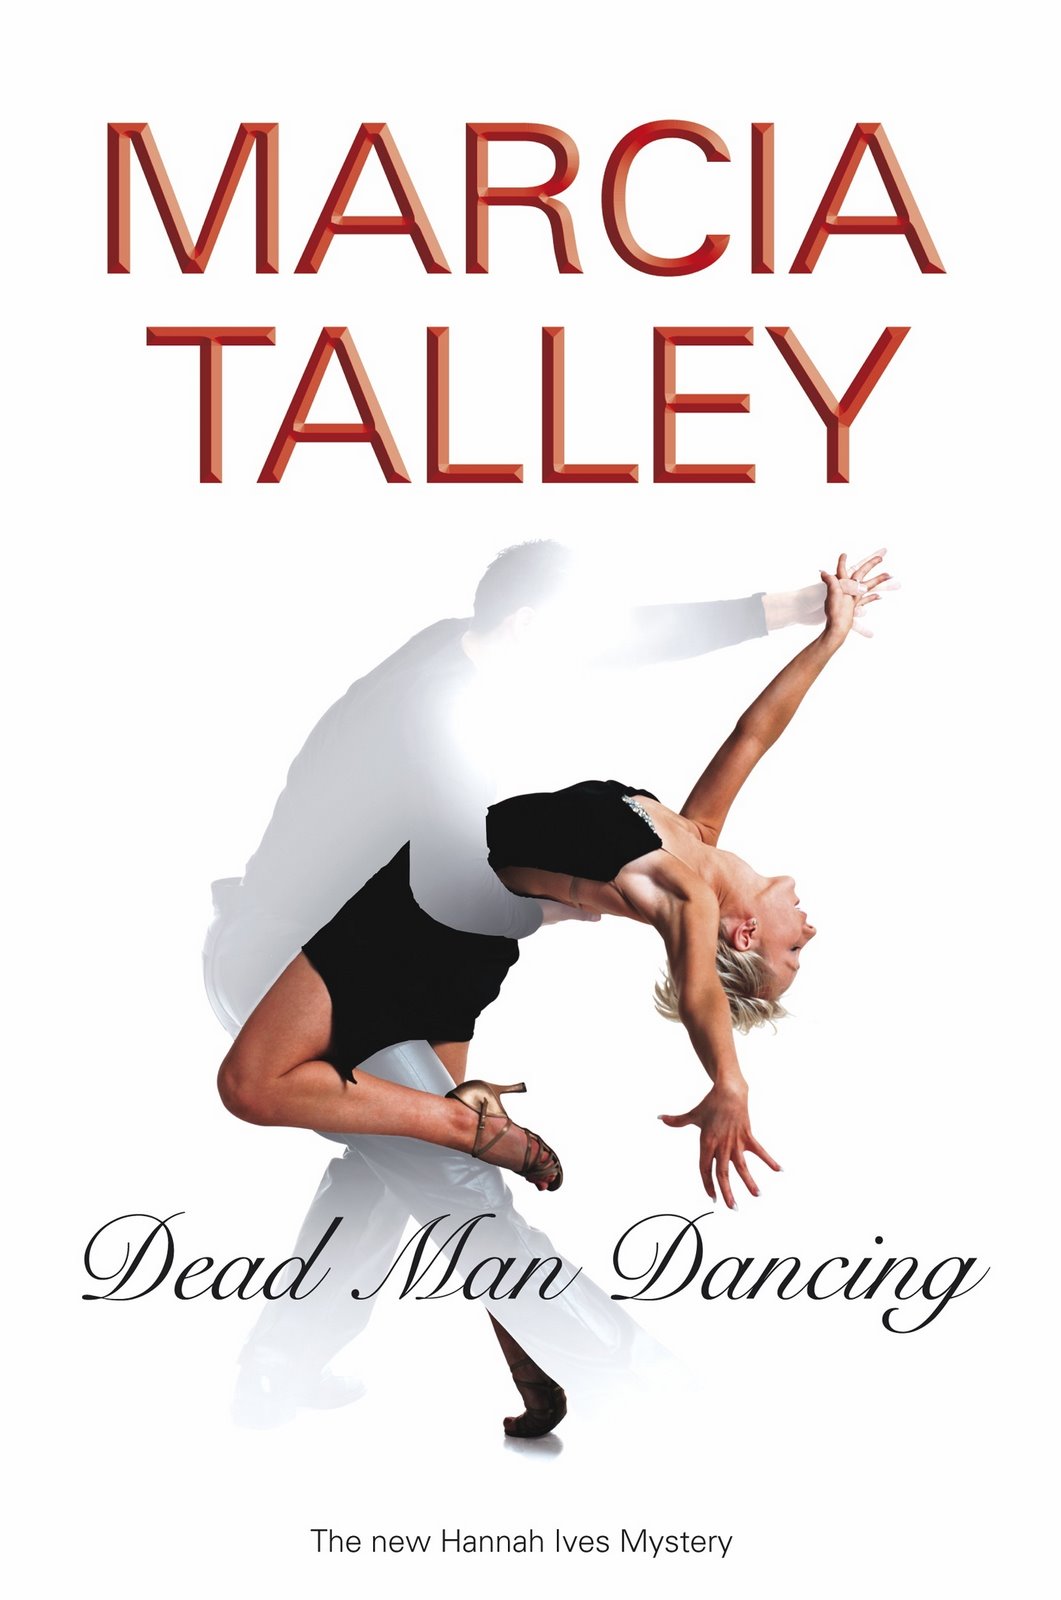 [Marcia+Talley,+Dead+Men+Dancing.jpg]